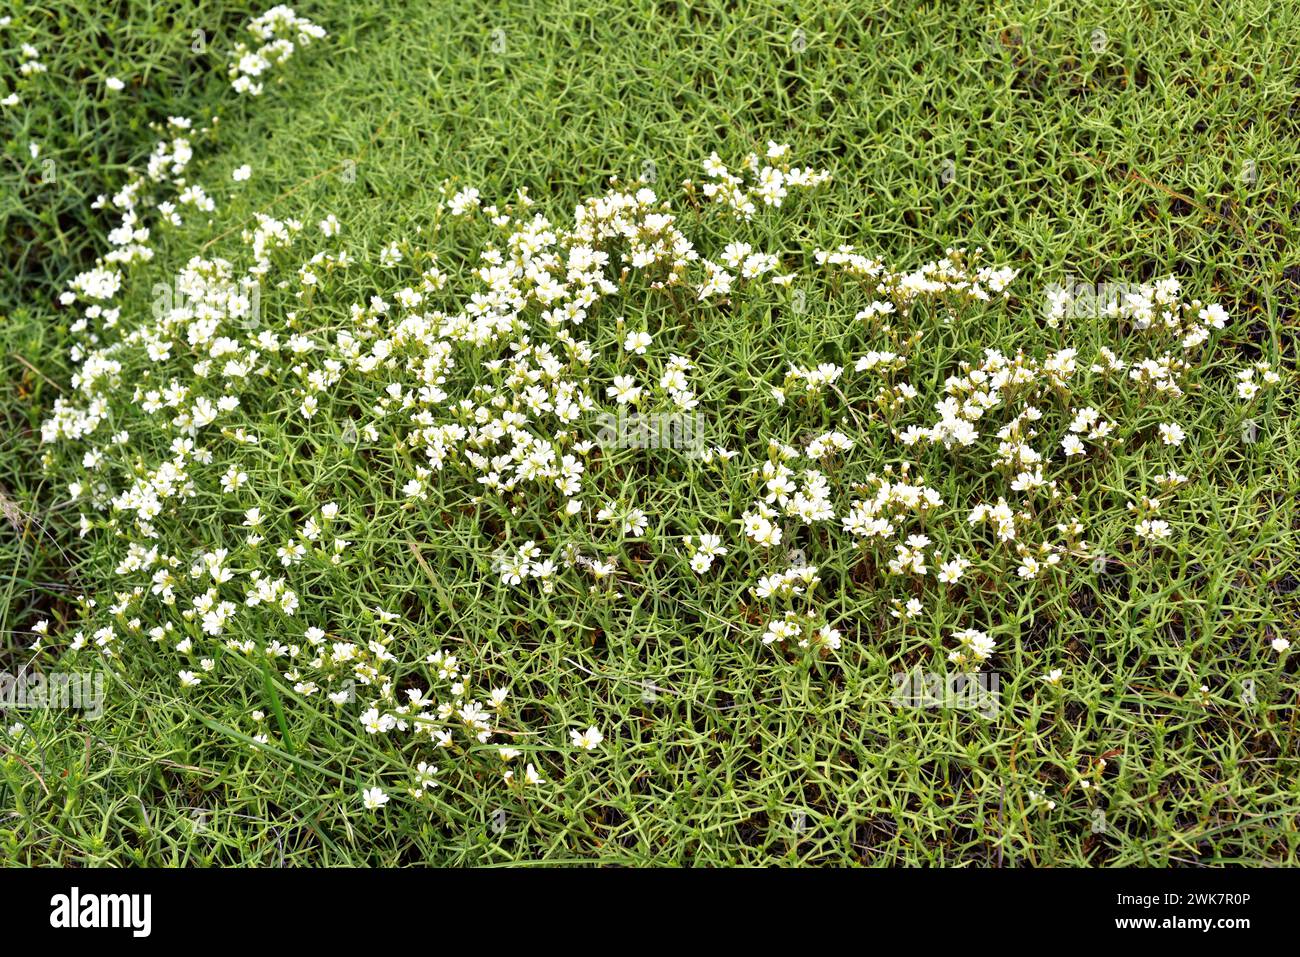 Oreille de souris des champs ou cuernecita (Cerastium arvense) herbe vivace avec des fleurs blanches et hierba de la culebra (Mulinum spinosum) un arbuste épineux. Ce ph Banque D'Images